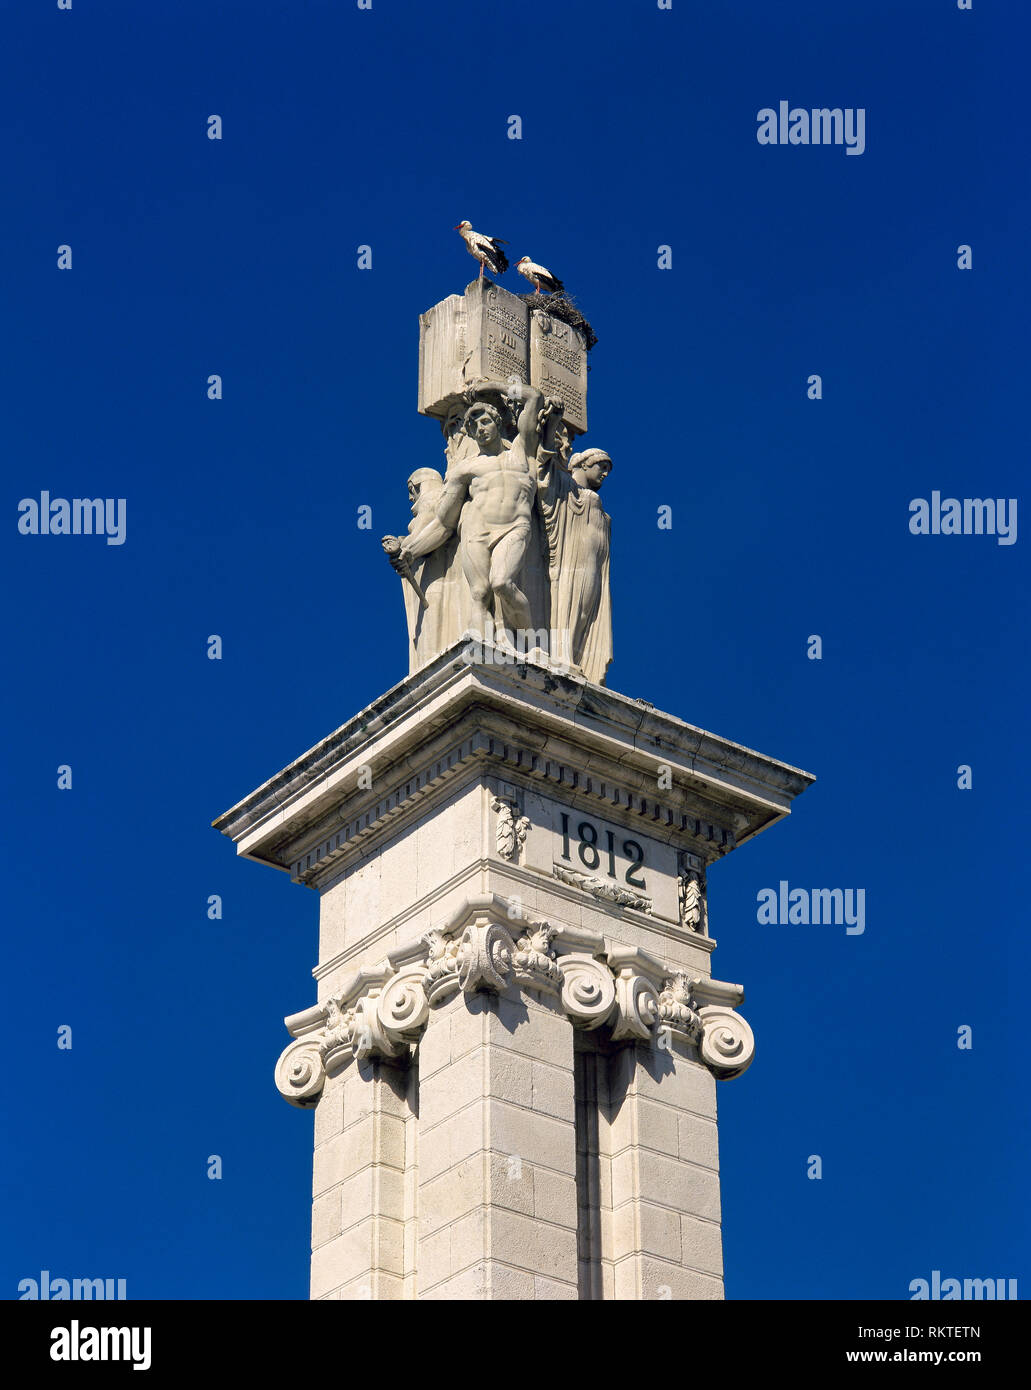 Spagna, Andalusia Cadiz. Monumento alla Costituzione del 1812. Fu eretto nel 1912, progettato da architetto Modesto Lopez Otero (1885-1962) e scultore Aniceto Marinas (1866-1953). Pilastro. Parte superiore. Piazza di Spagna. Foto Stock